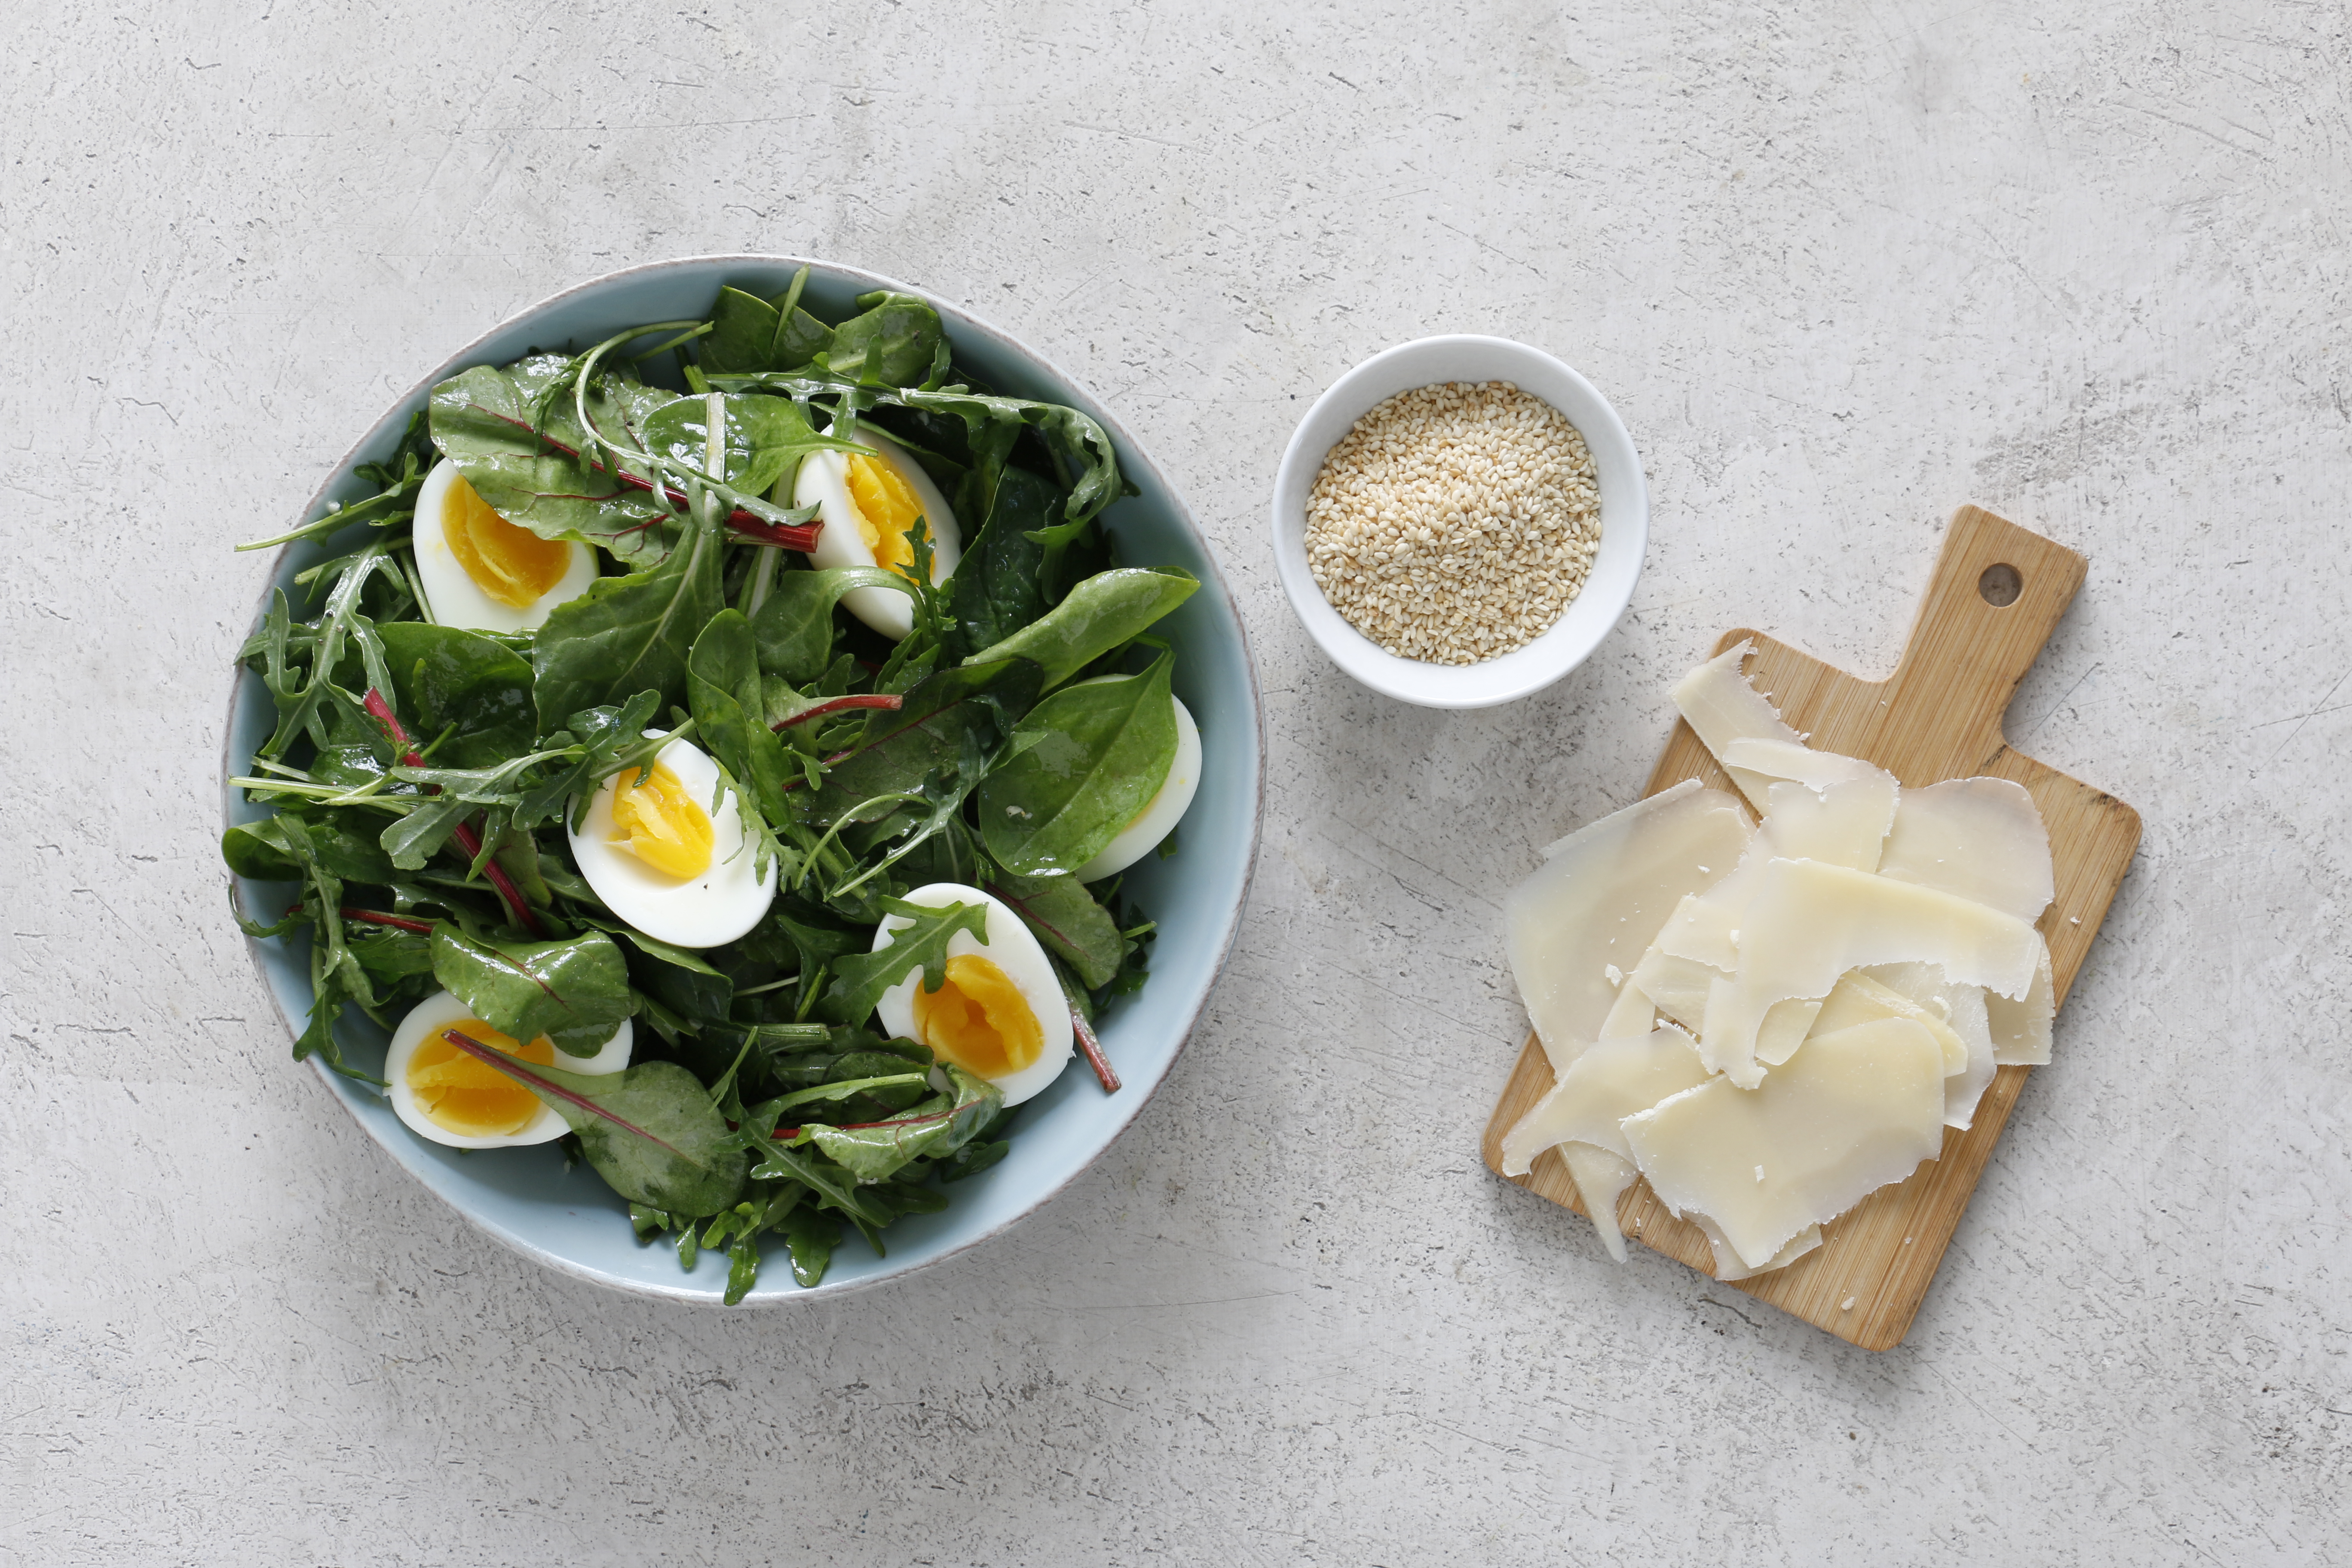 Салатные листья смешайте с заправкой и разложите на тарелки. Сверху положите по две половинки яйца. Посыпьте стружкой твердого сыра. (ее удобно делать ножом для чистки овощей). Украсьте жареным кунжутом.